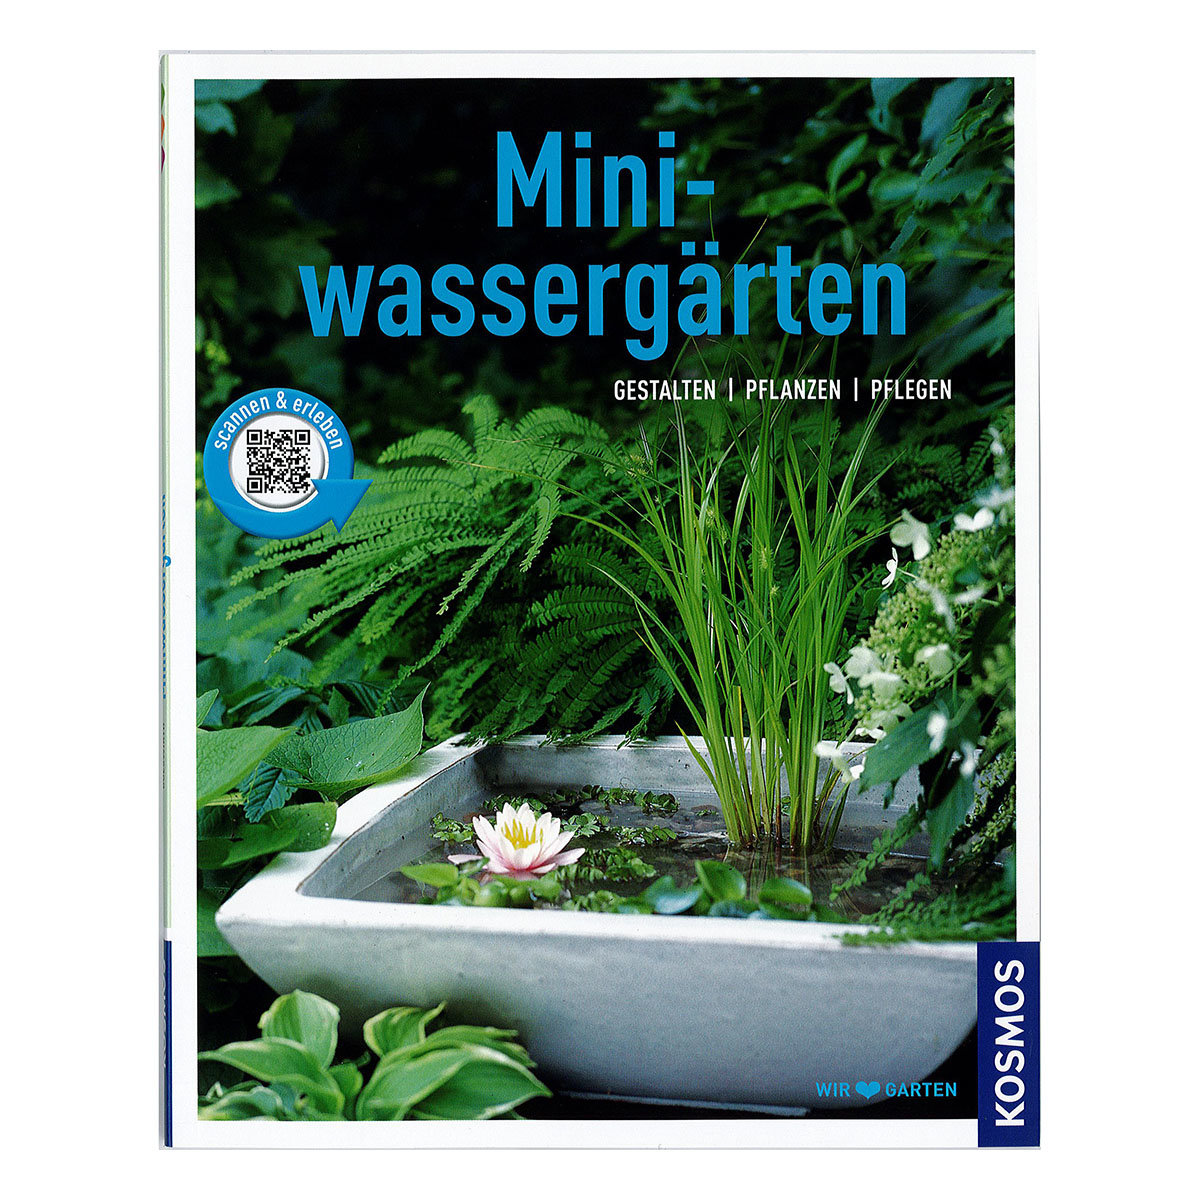 Miniwassergärten - Gestalten, pflanzen, pflegen
